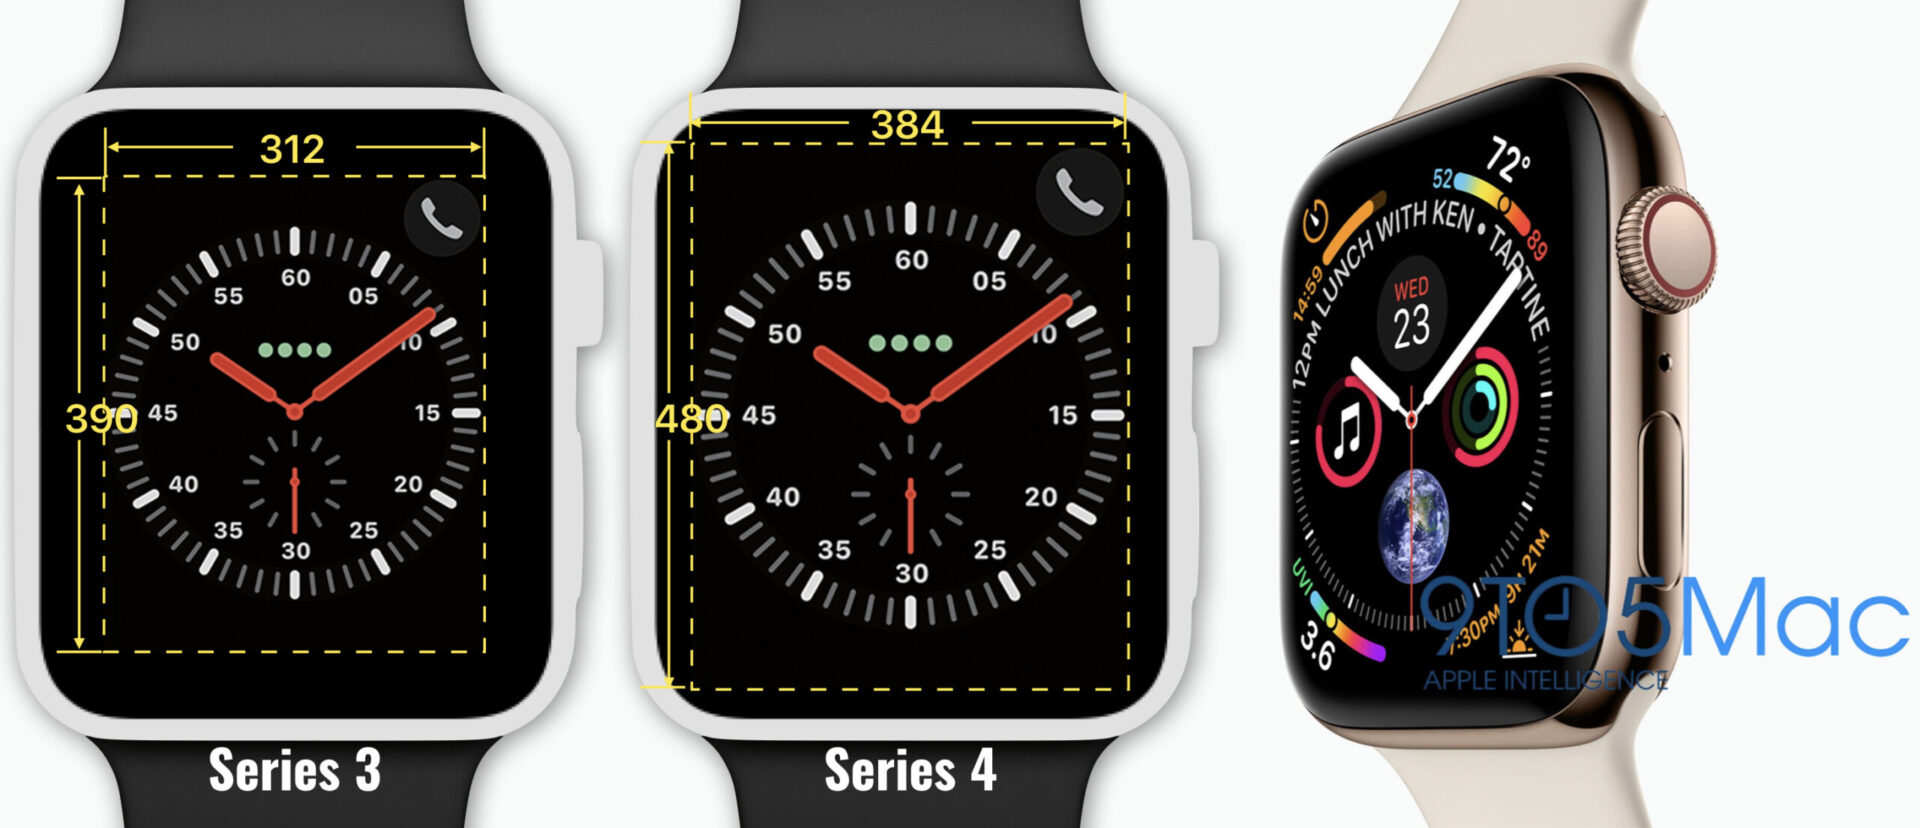 apple watch s4 - Tech2.hu